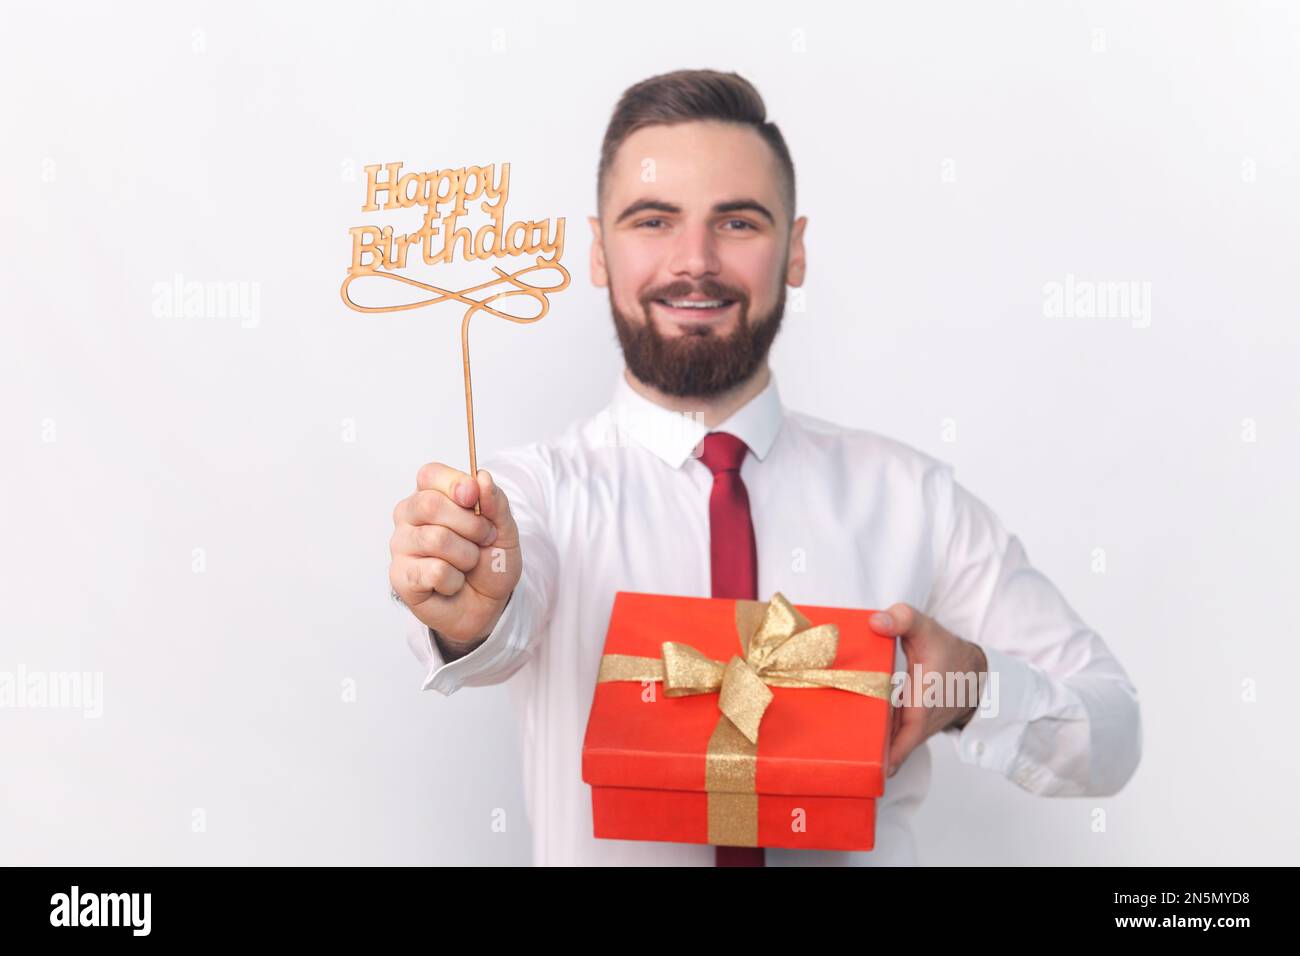 Portrait eines lächelnden, zufriedenen, gutaussehenden Mannes in weißem Hemd, der Partyauflagen hält, mit Happy Birthday-Inschrift und roter Geschenkbox. Studioaufnahmen im Innenbereich isoliert auf grauem Hintergrund. Stockfoto